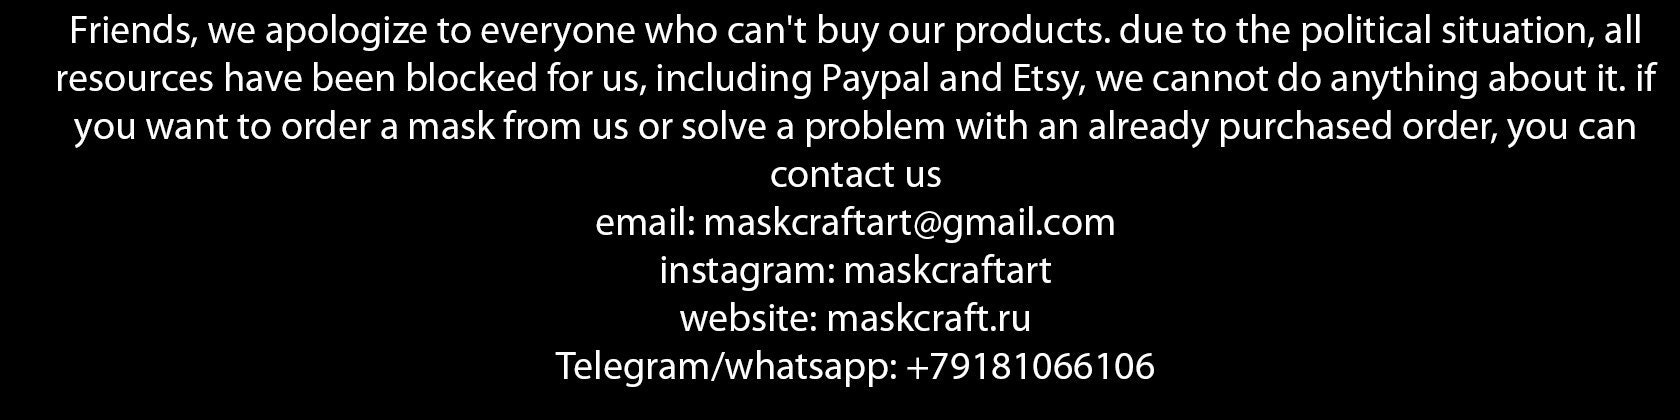 MaskCraftArt - Etsy